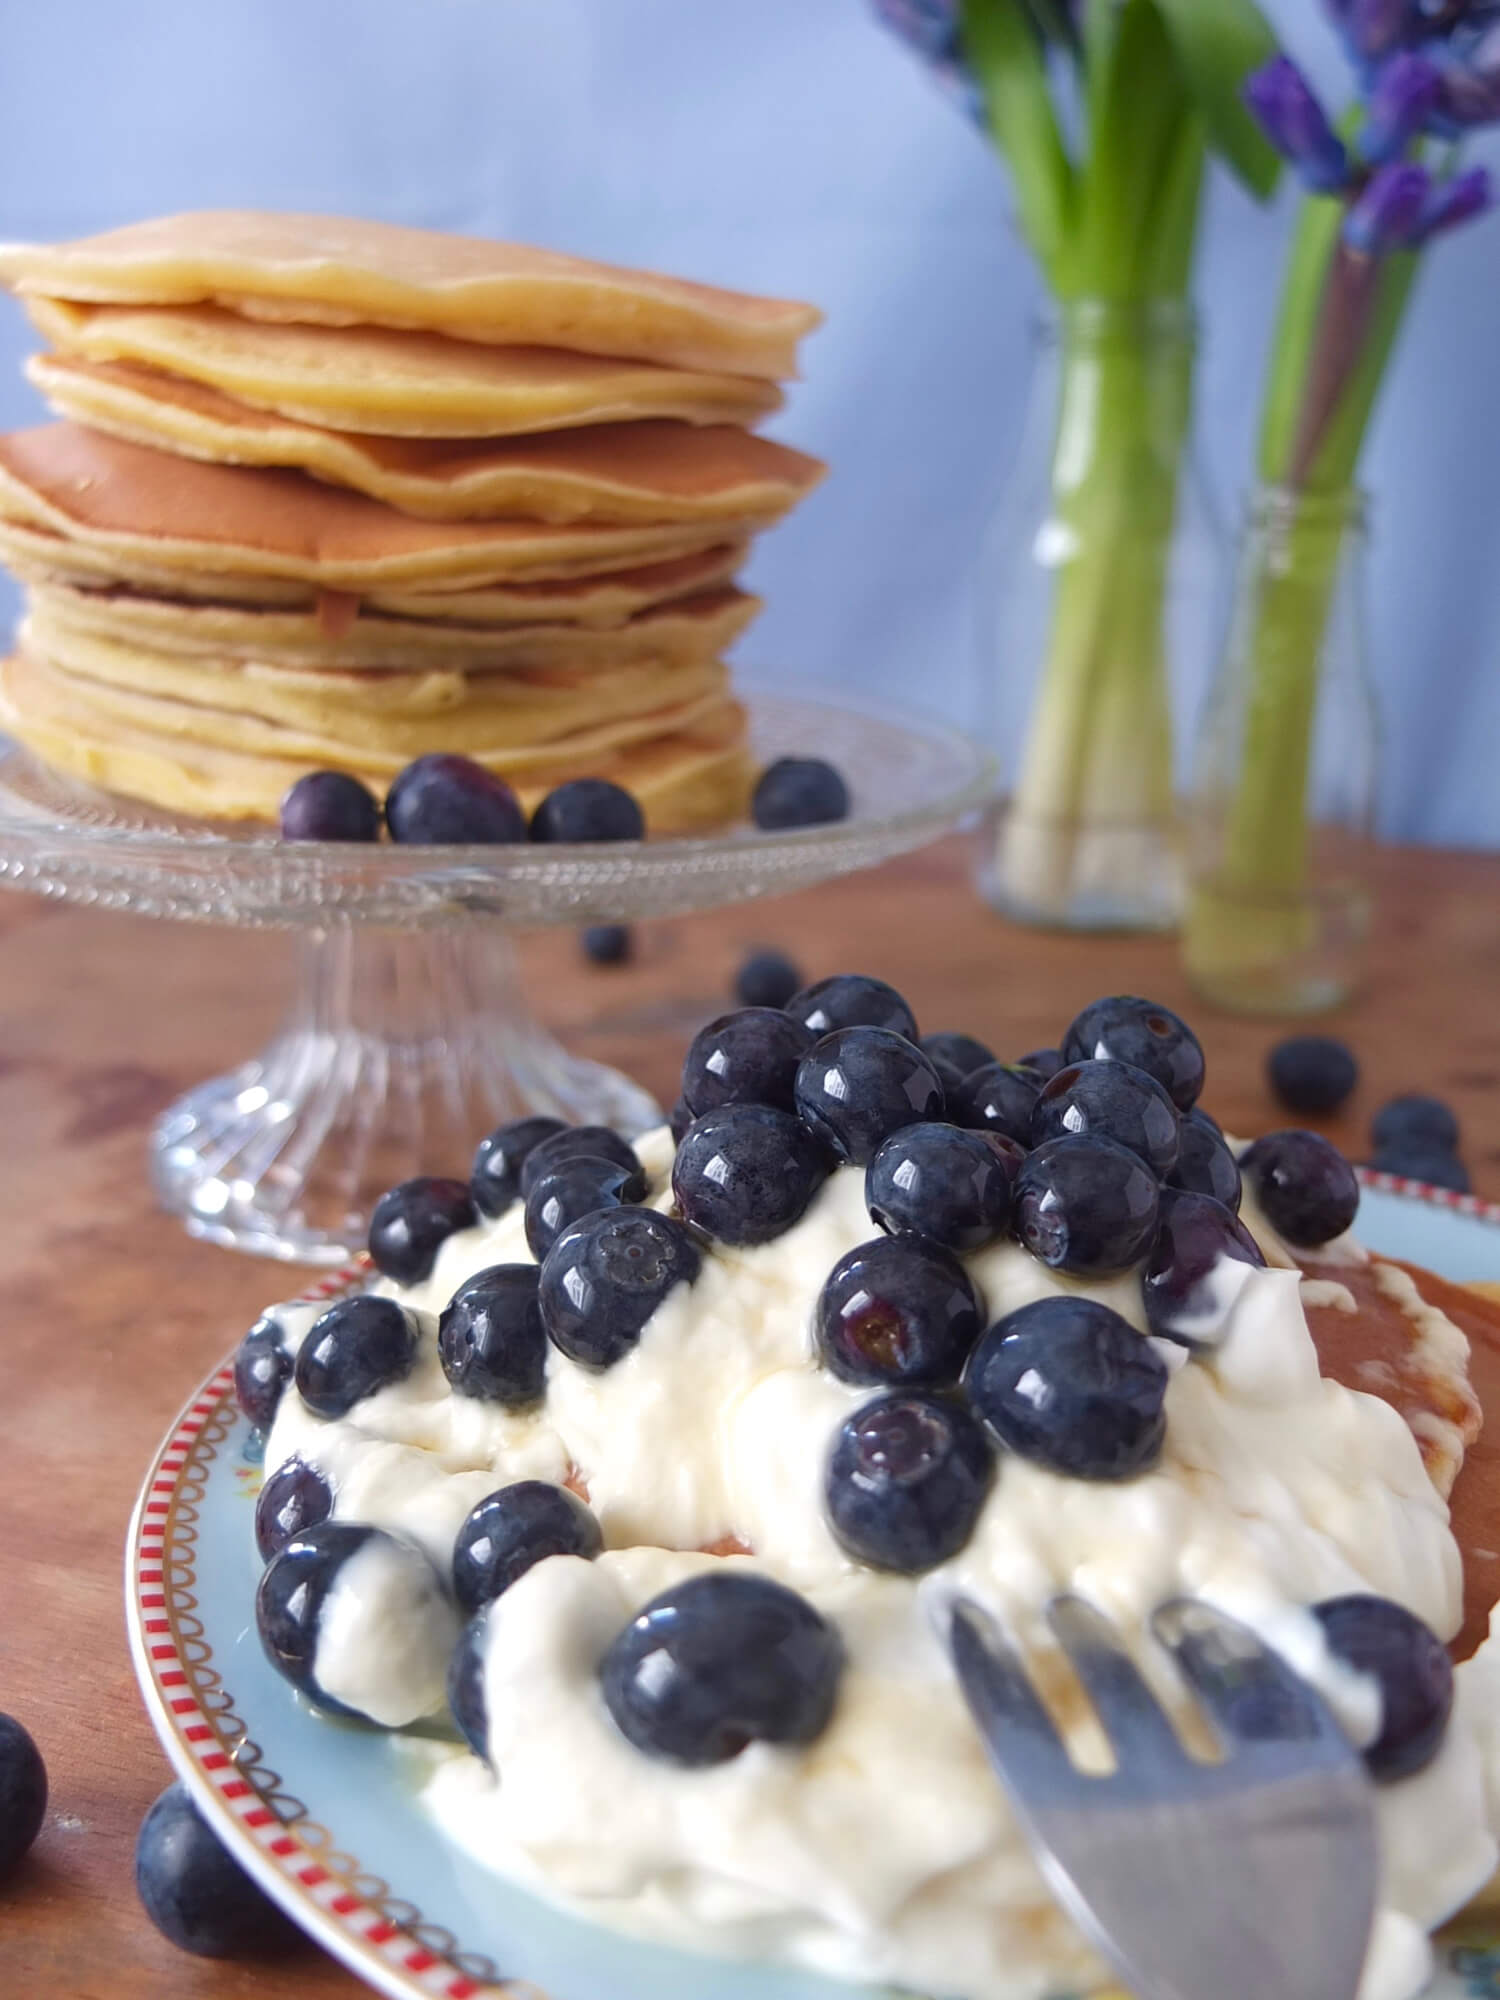 Klassische Pancakes - La Crema Patisserie Foodblog Backblog